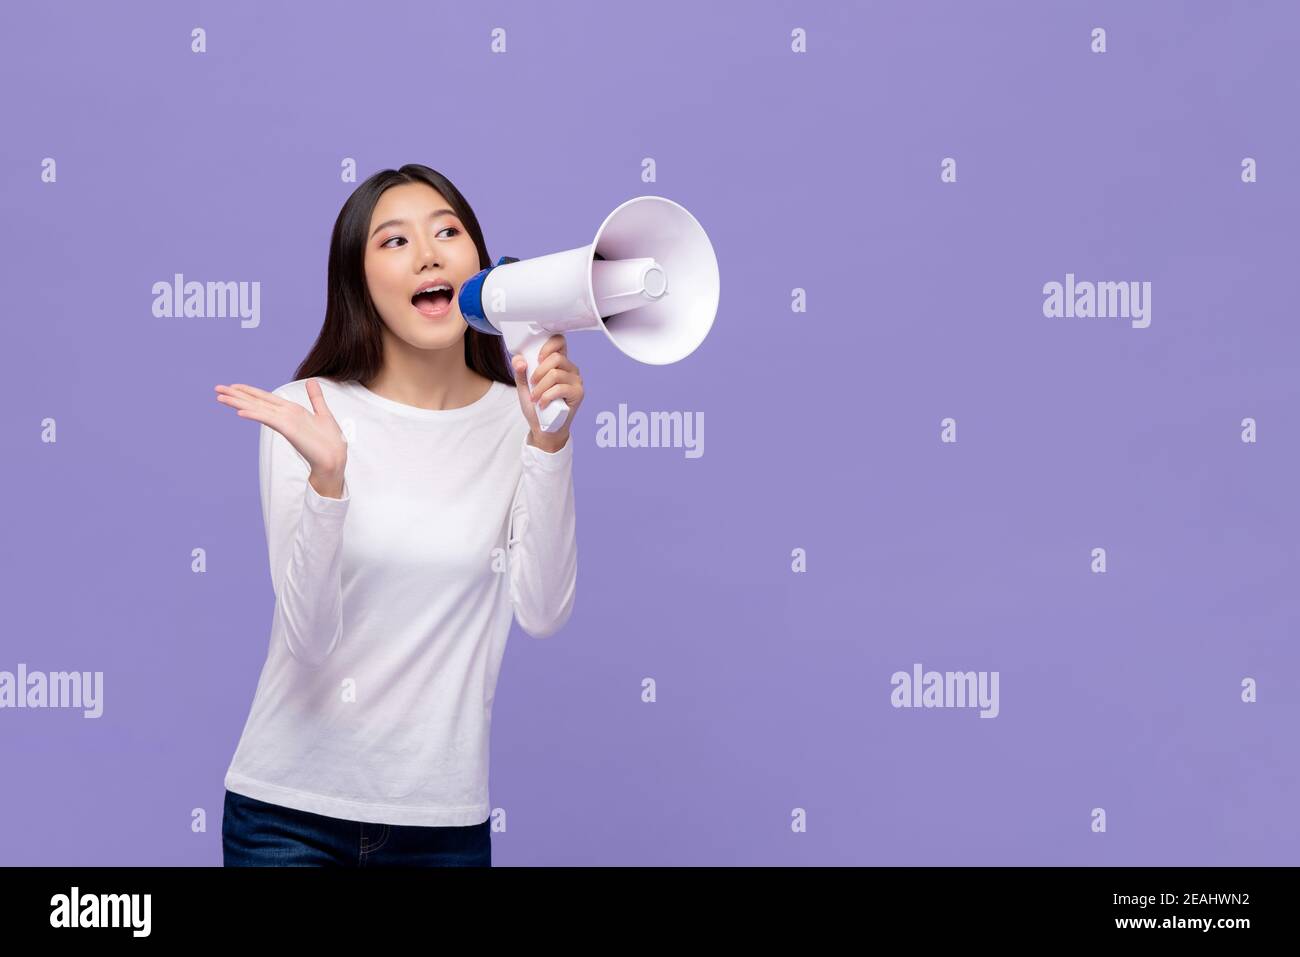 Belle femme asiatique annonçant sur le magaphone isolé sur fond violet avec espace de copie Banque D'Images